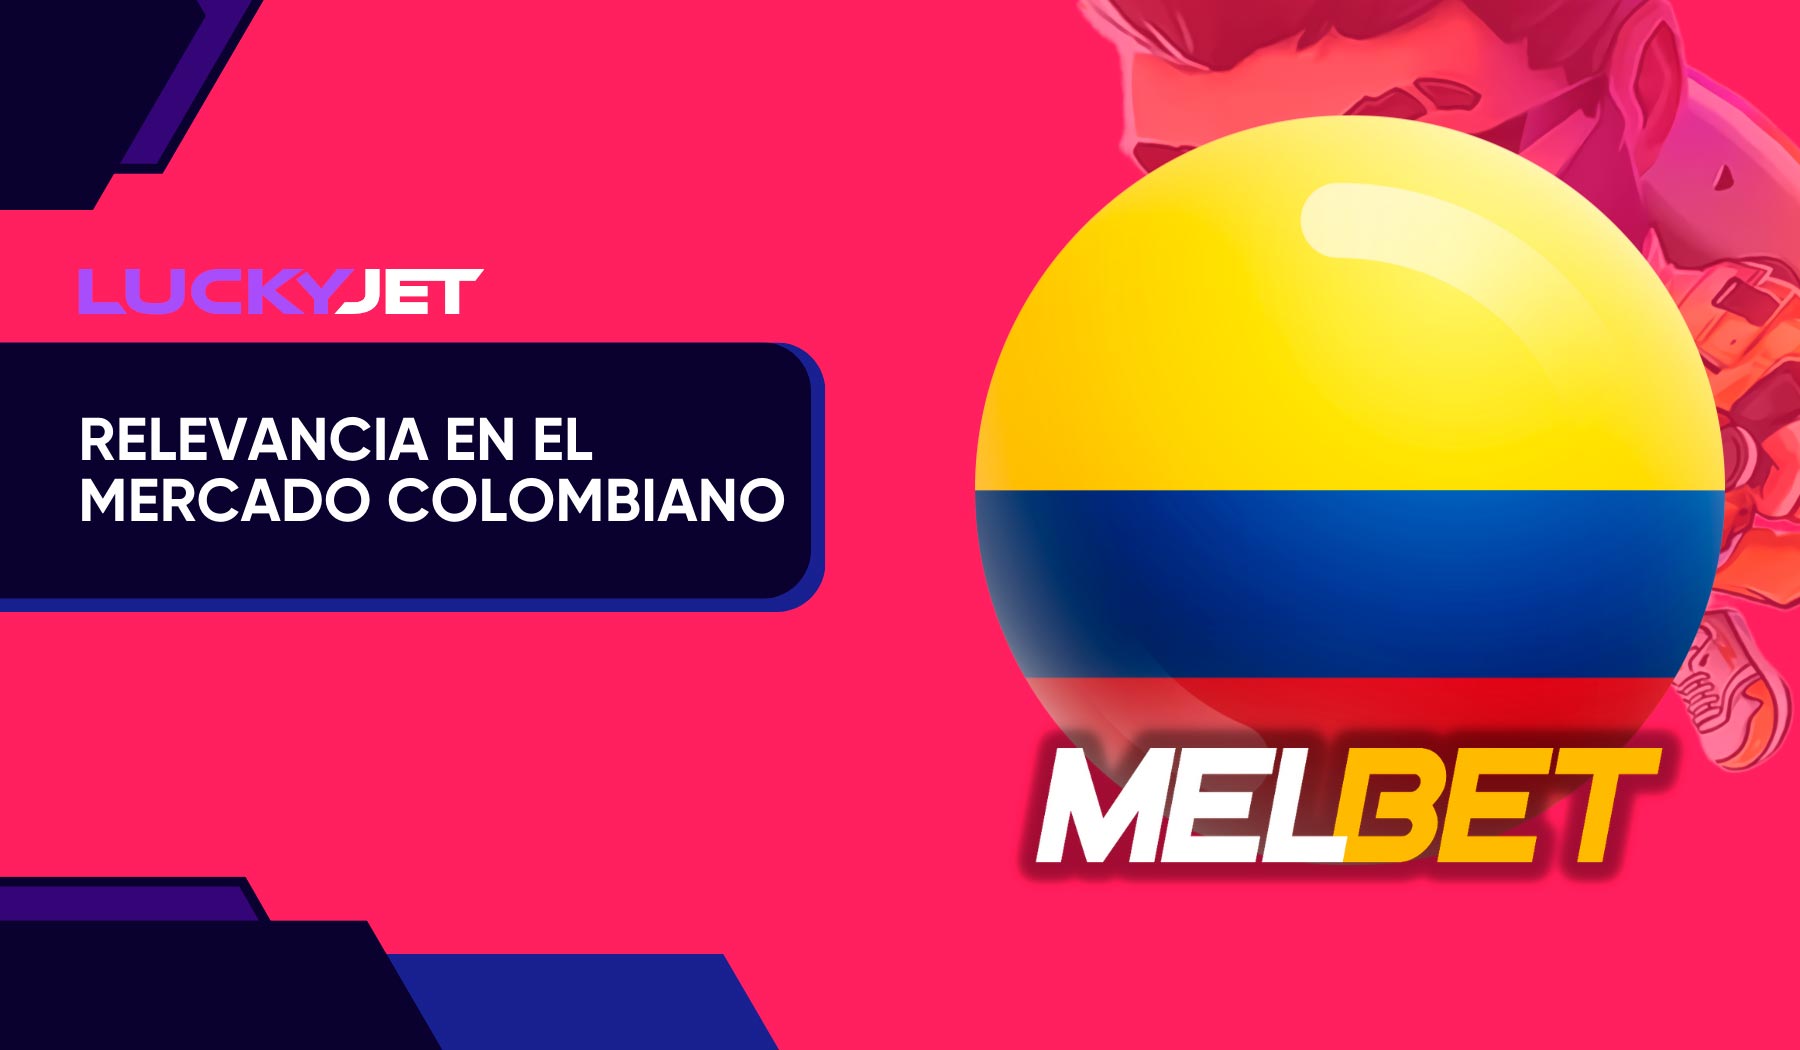 Lucky Jet Melbet en el mercado colombiano